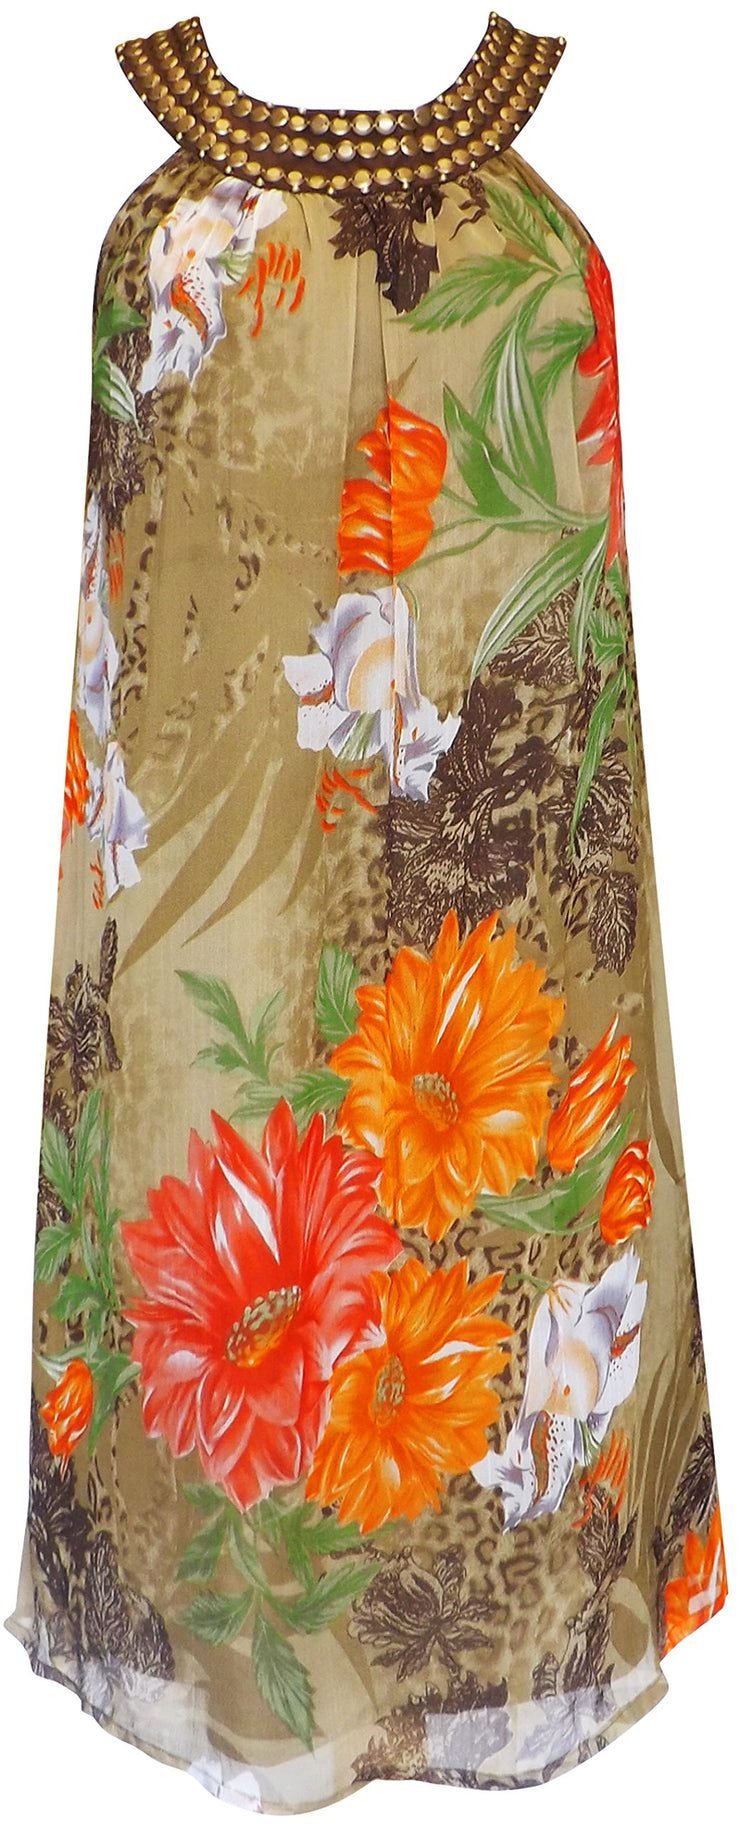 Floral Frock Midi Dress Embellished Tunic Neckline (Large, Olive Green)